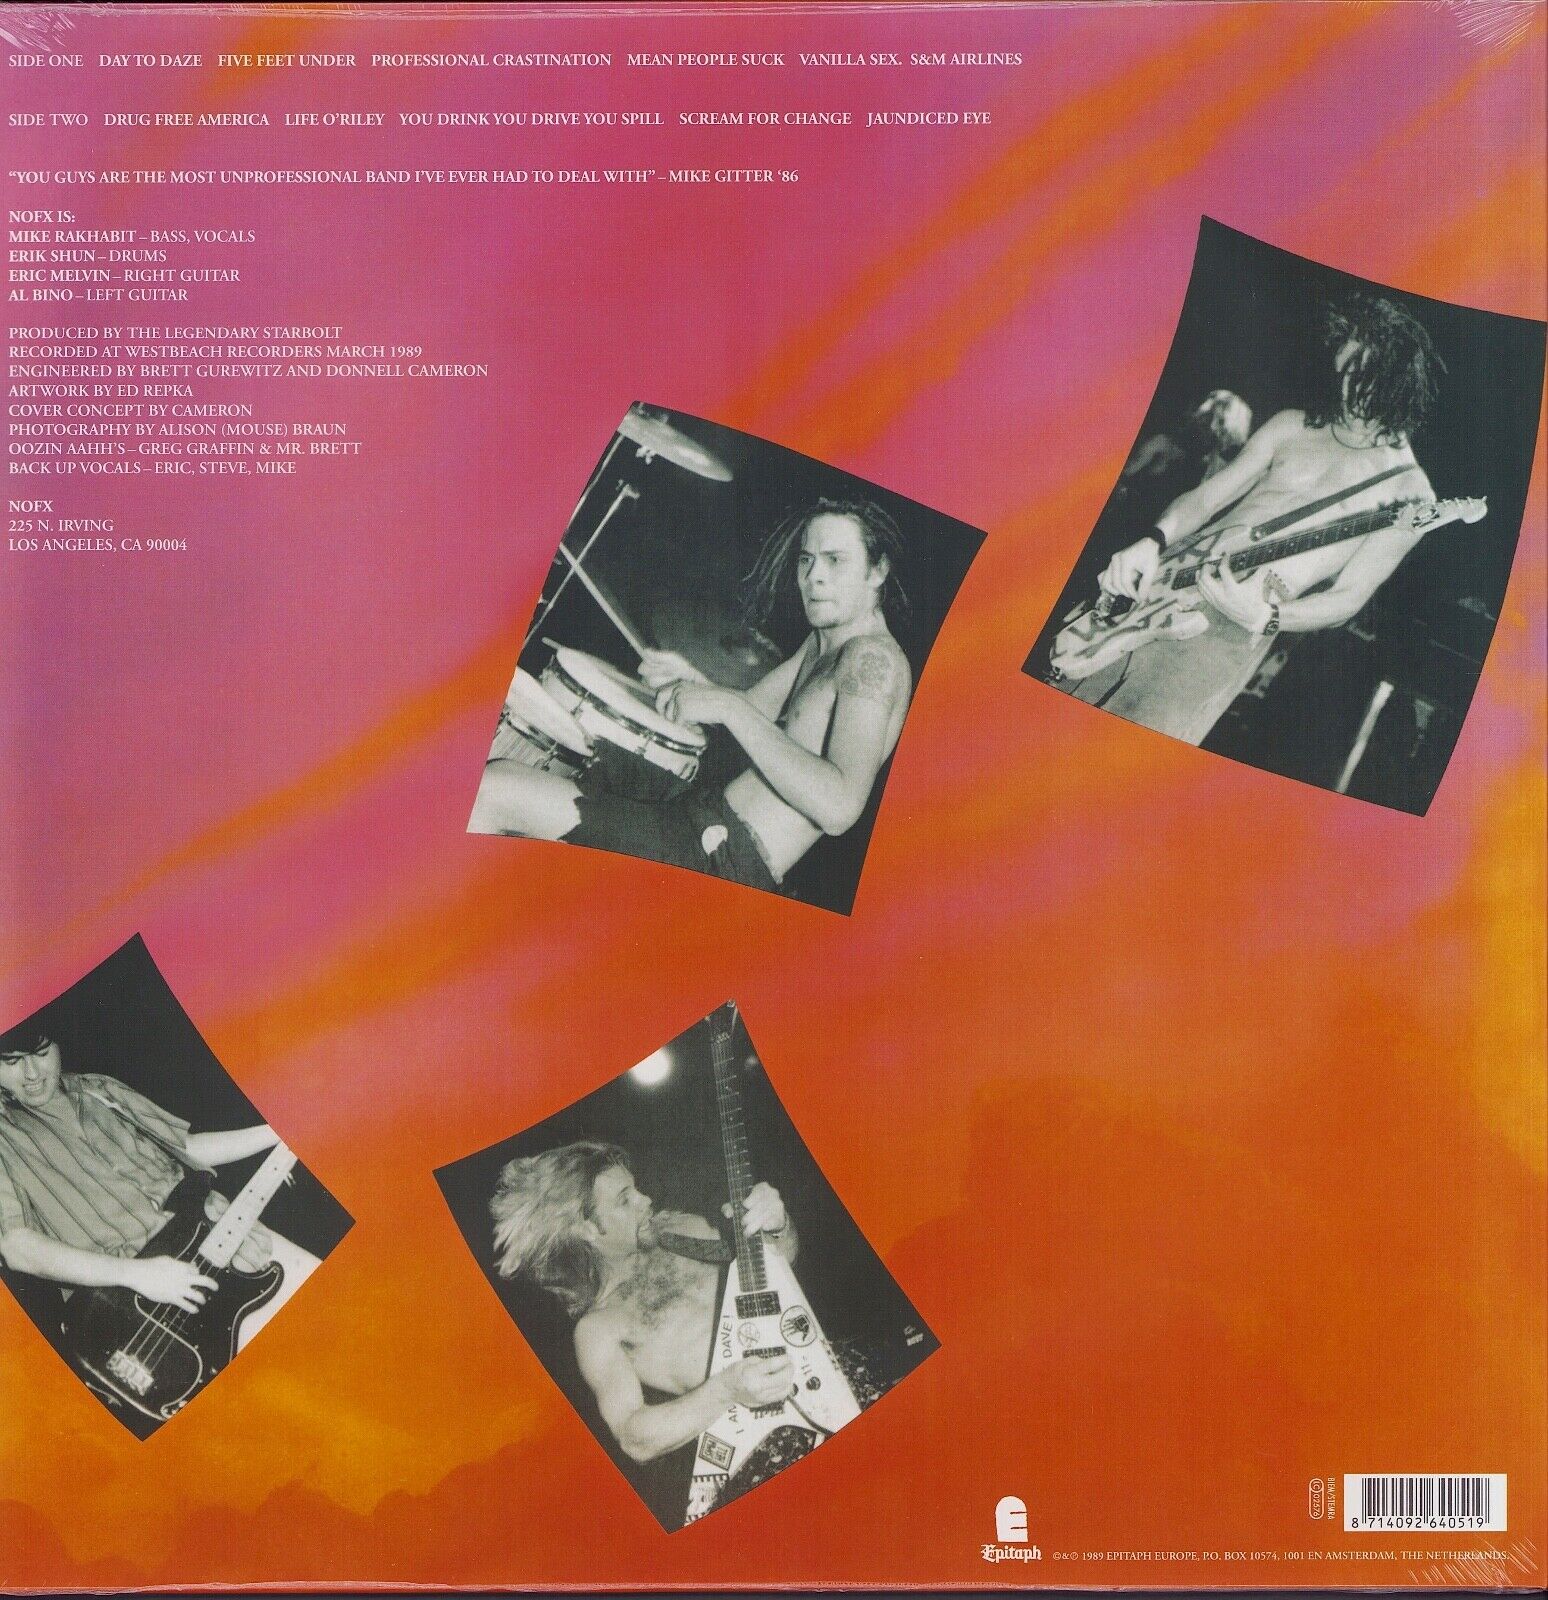 NOFX -S&M Airlines Black Vinyl LP Limited Edition